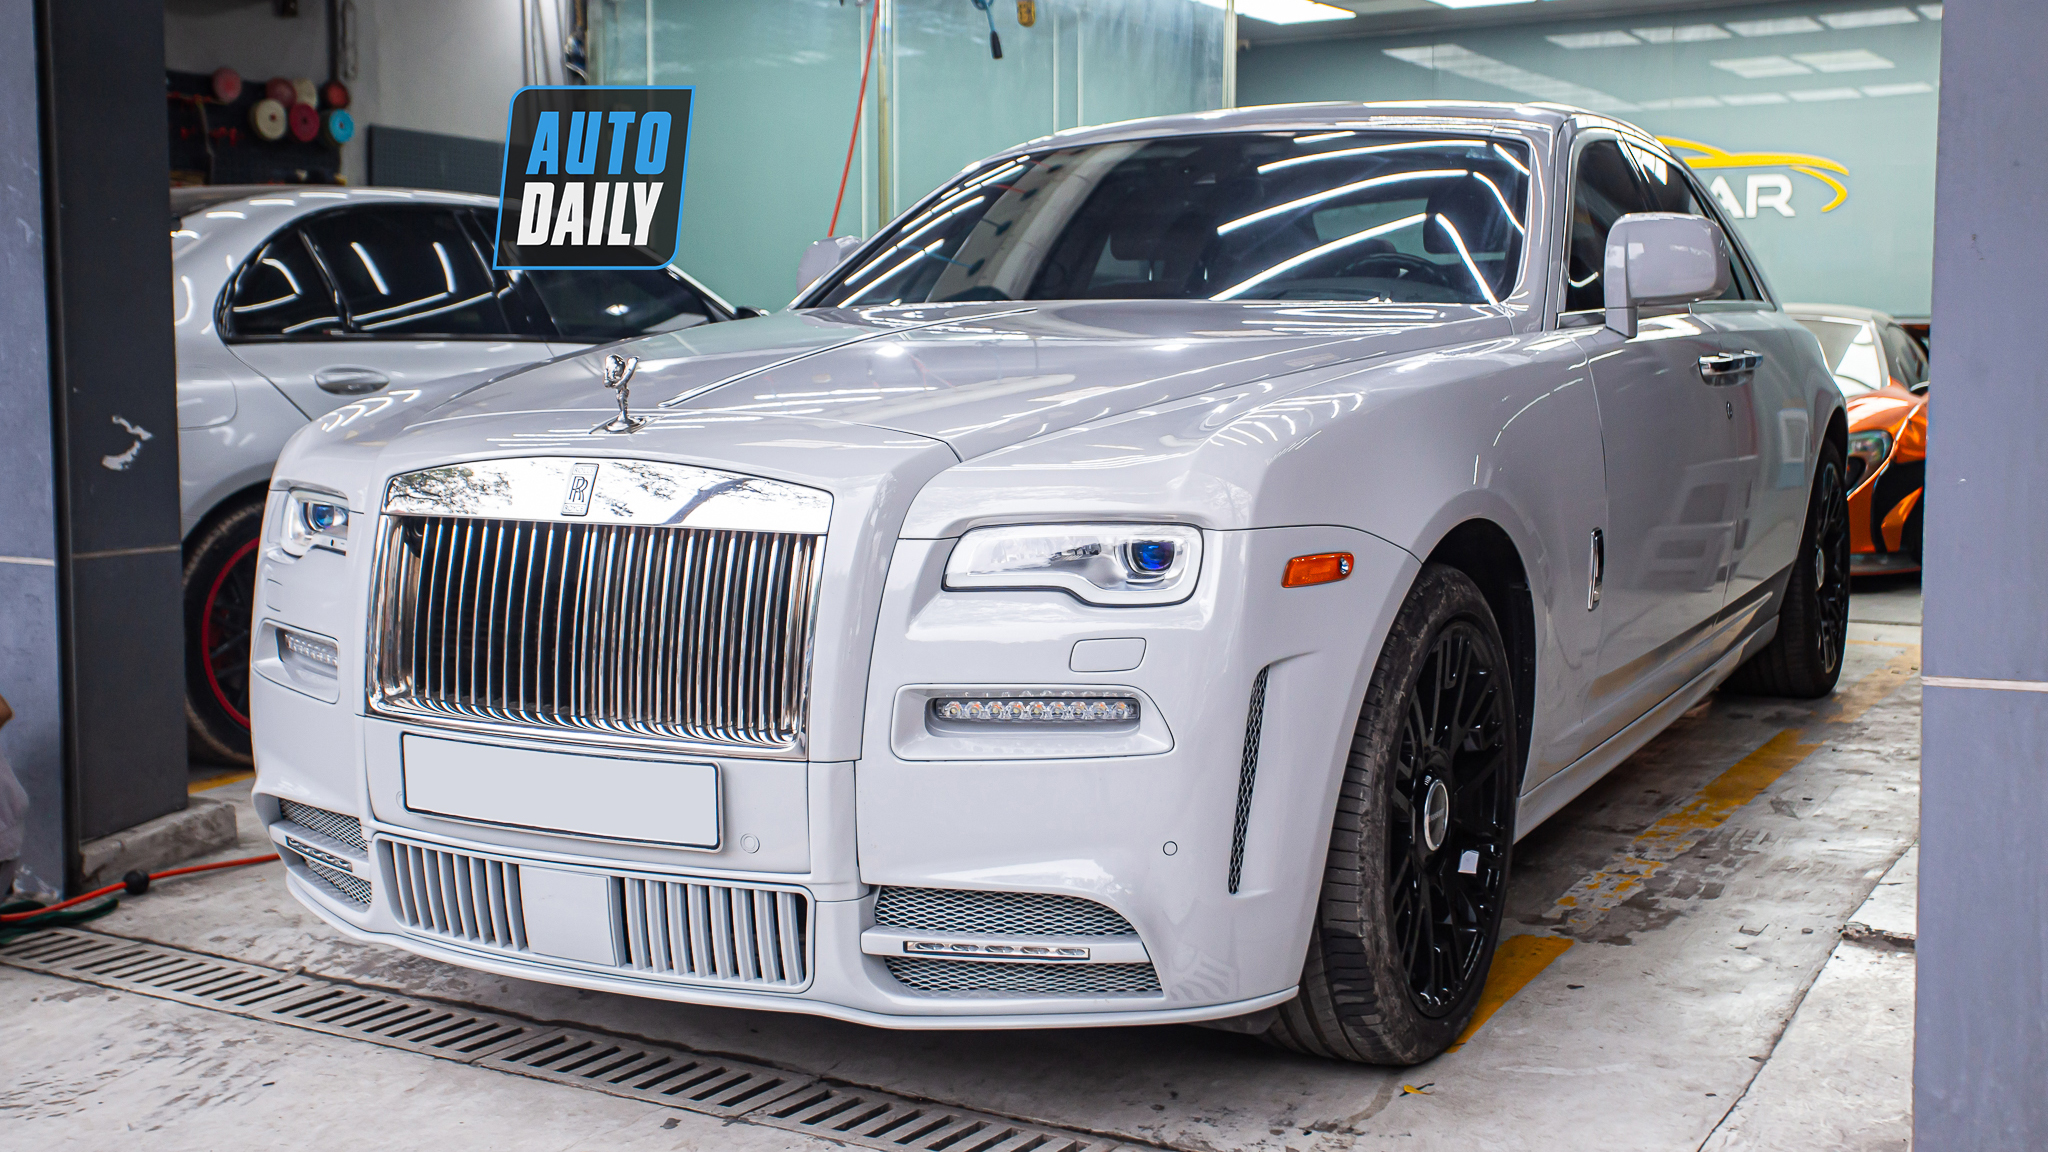 Cận cảnh Rolls-Royce Ghost độ Mansory độc nhất Việt Nam, riêng tiền độ hơn 700 triệu